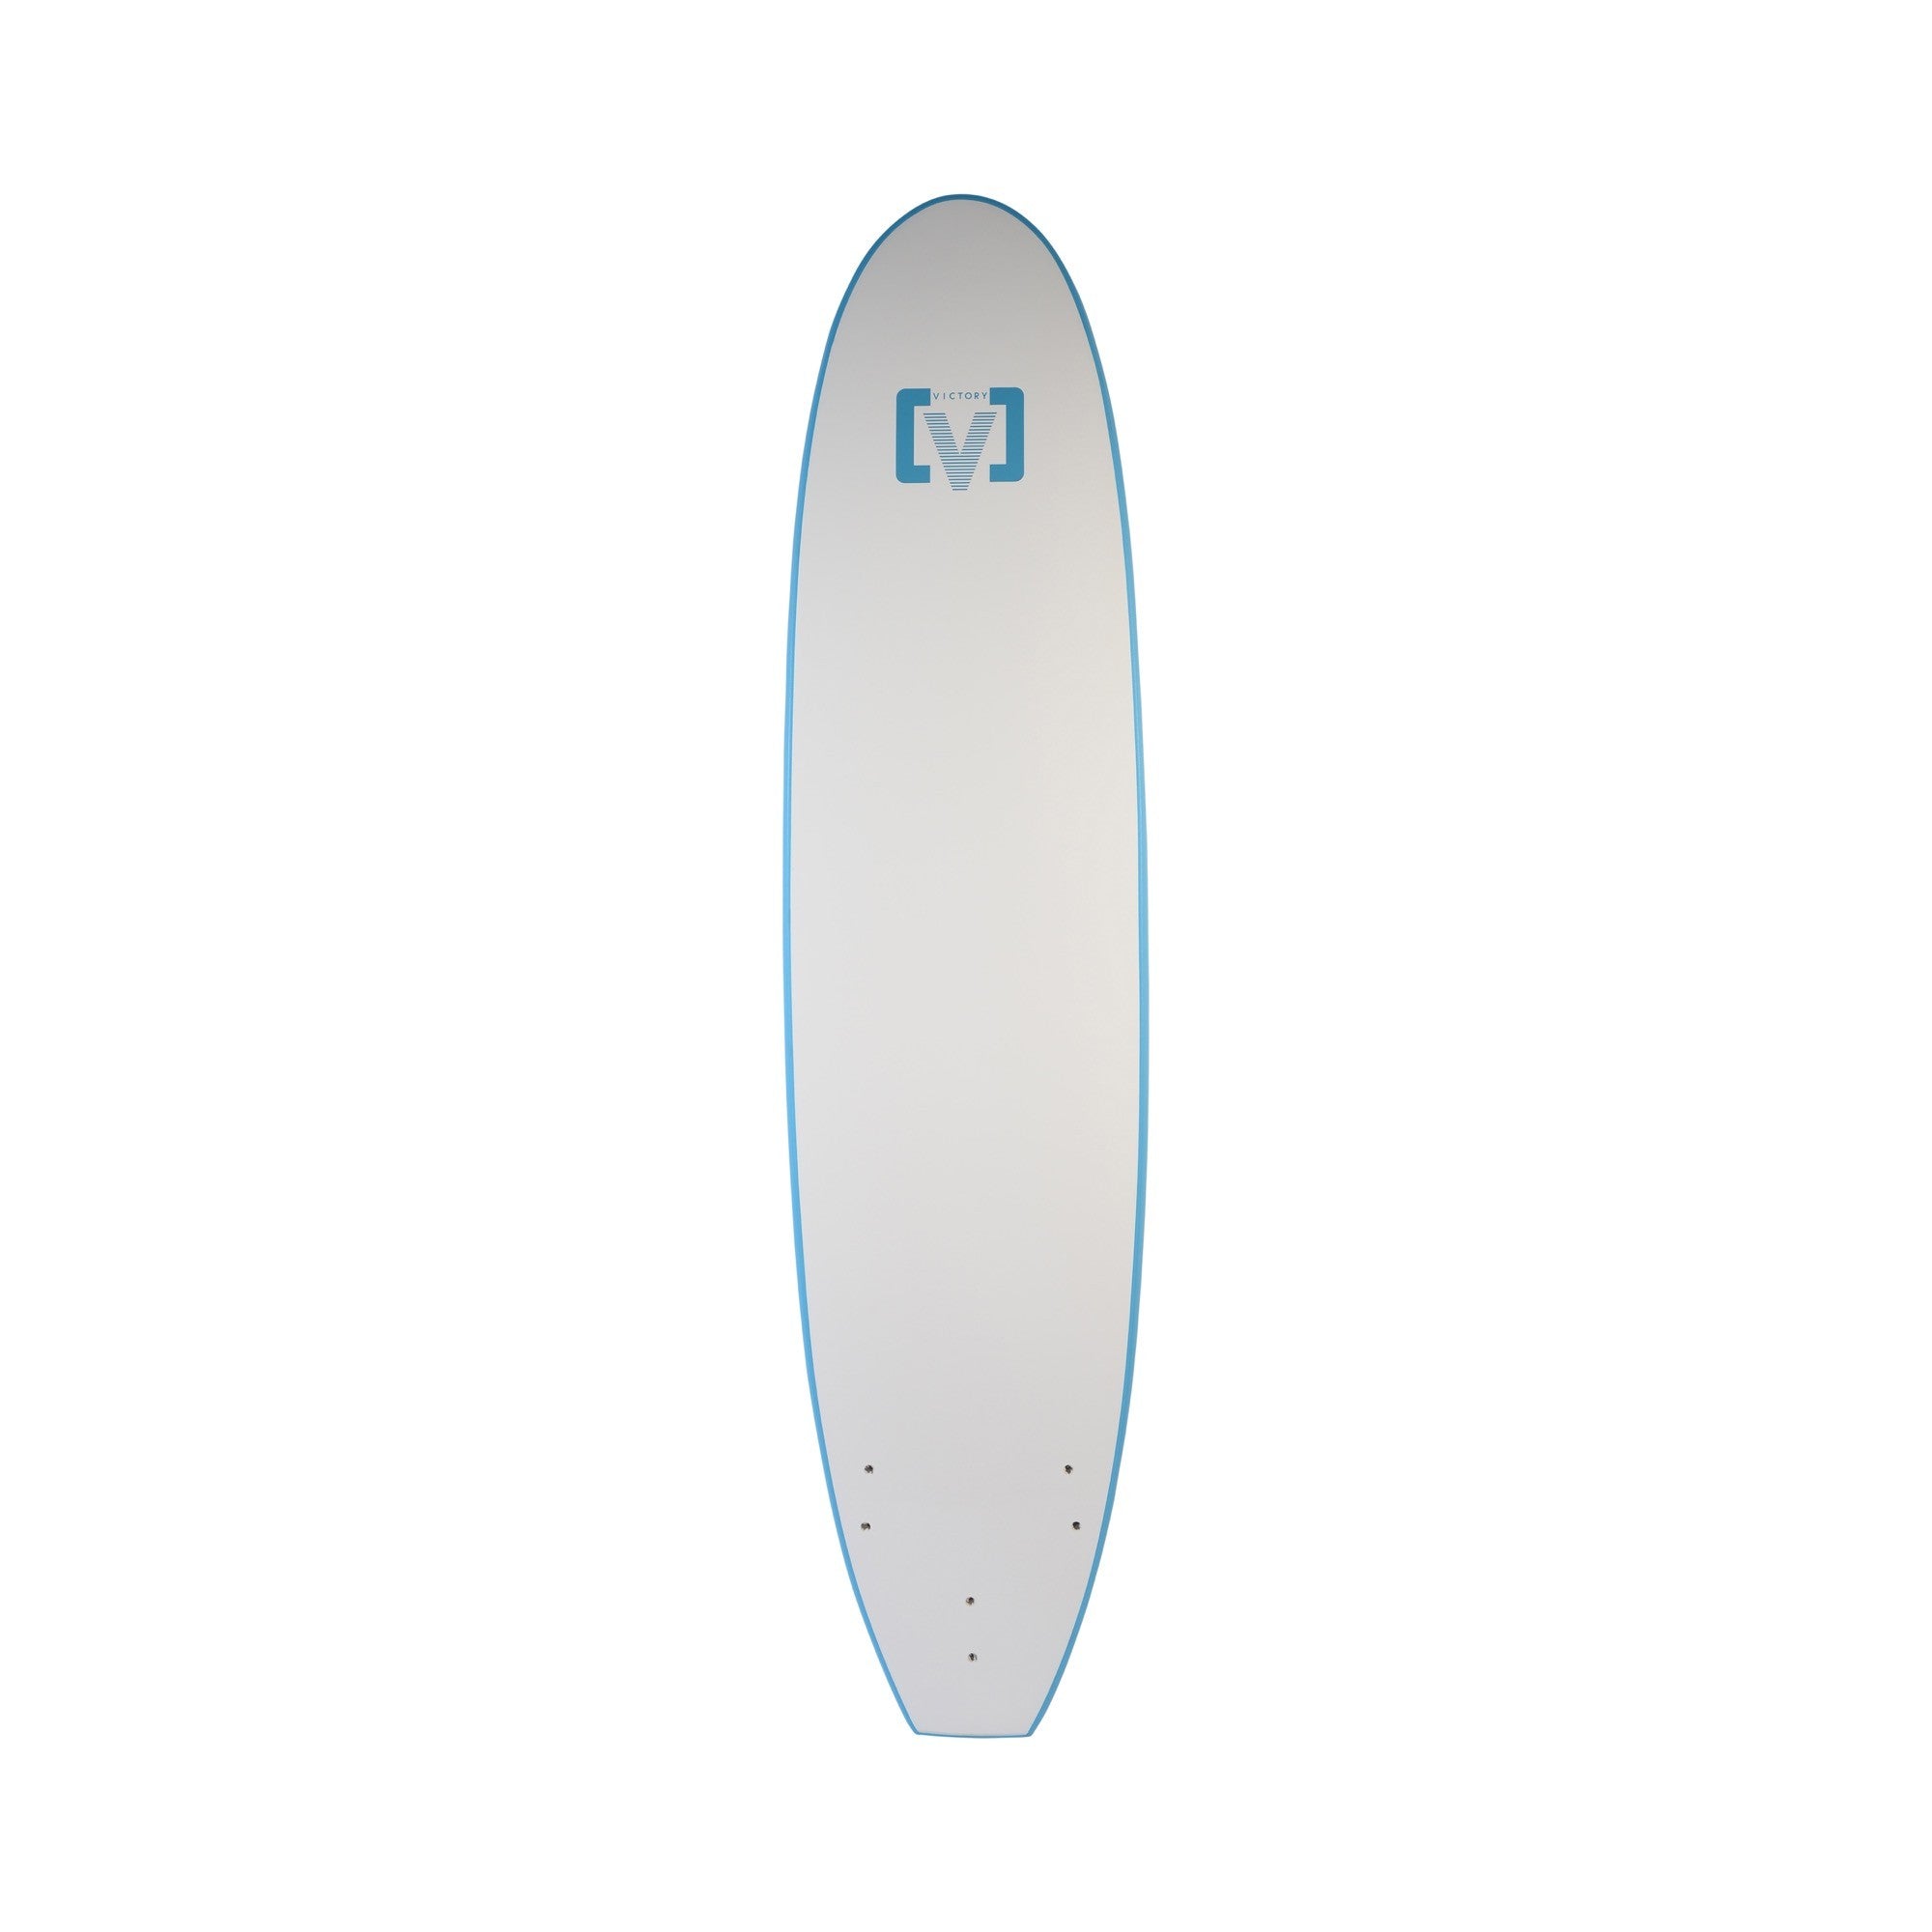 VICTORY - EPS Softboard - Foam Surfboard - Malibu 8'0 - Sky Blue